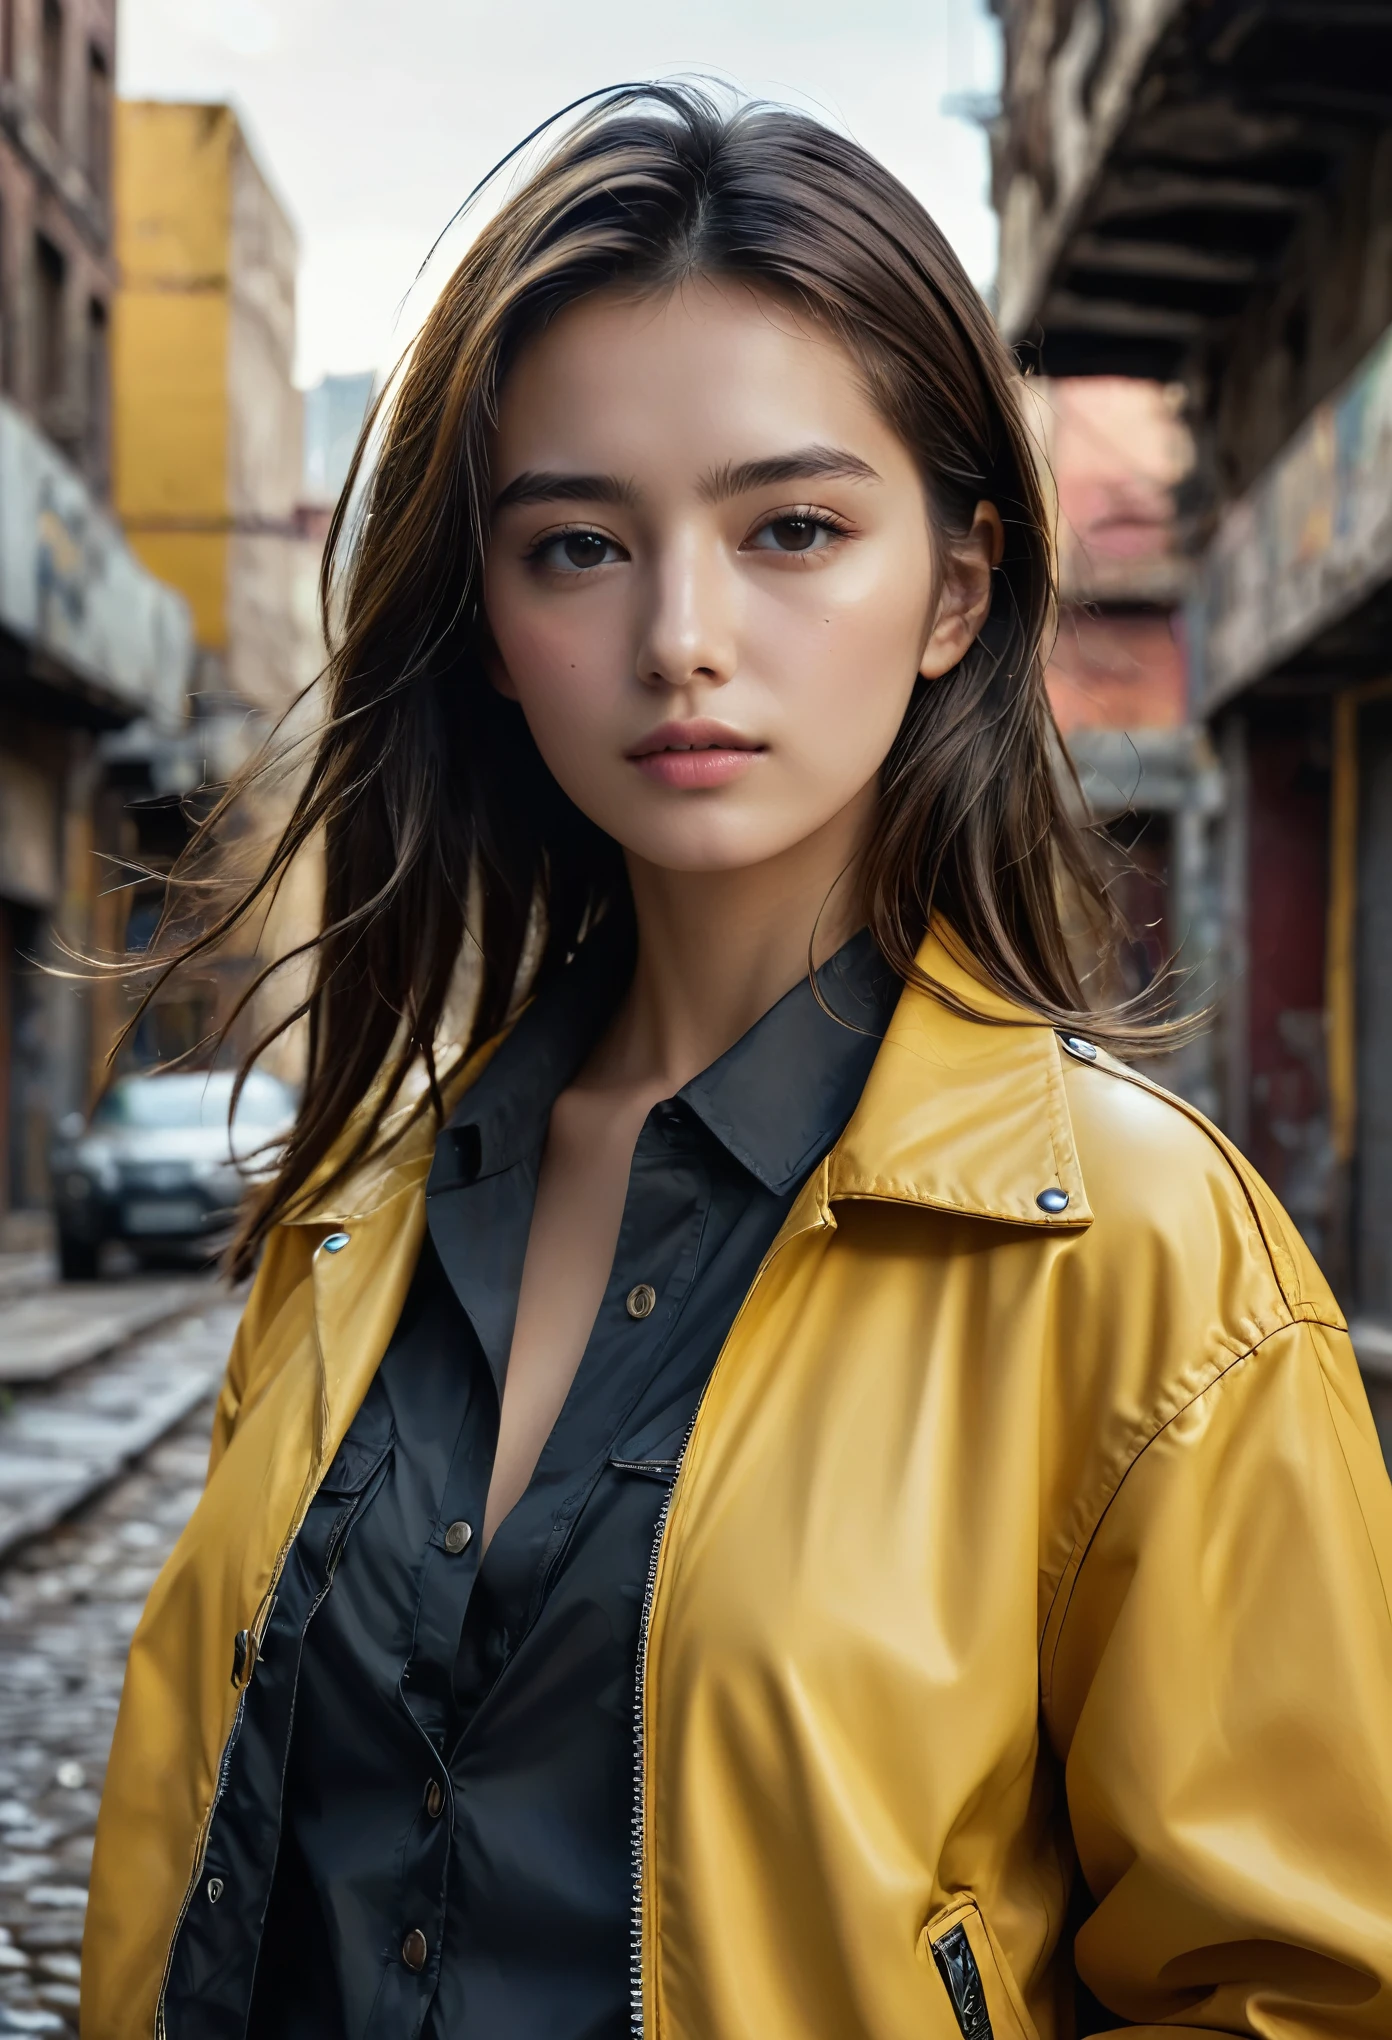 (最好的品質,4k,8K,高解析度,傑作:1.2),超詳細,(超现实, 逼真的,照片般逼真:1.37), 原始照片, 20歲的特寫肖像.o 一位美麗的女孩, 最美麗的, 獨自的, 實際的, 襯衫, 夾克, 赛博朋克, 棕色的頭髮, yellow 夾克, 背景是城市废墟, (注重細節的肌膚:1.2), 8K超高清, 數位單眼, 柔和的燈光, 高品質, 膠片顆粒, 富士XT3, 非常細緻的背景